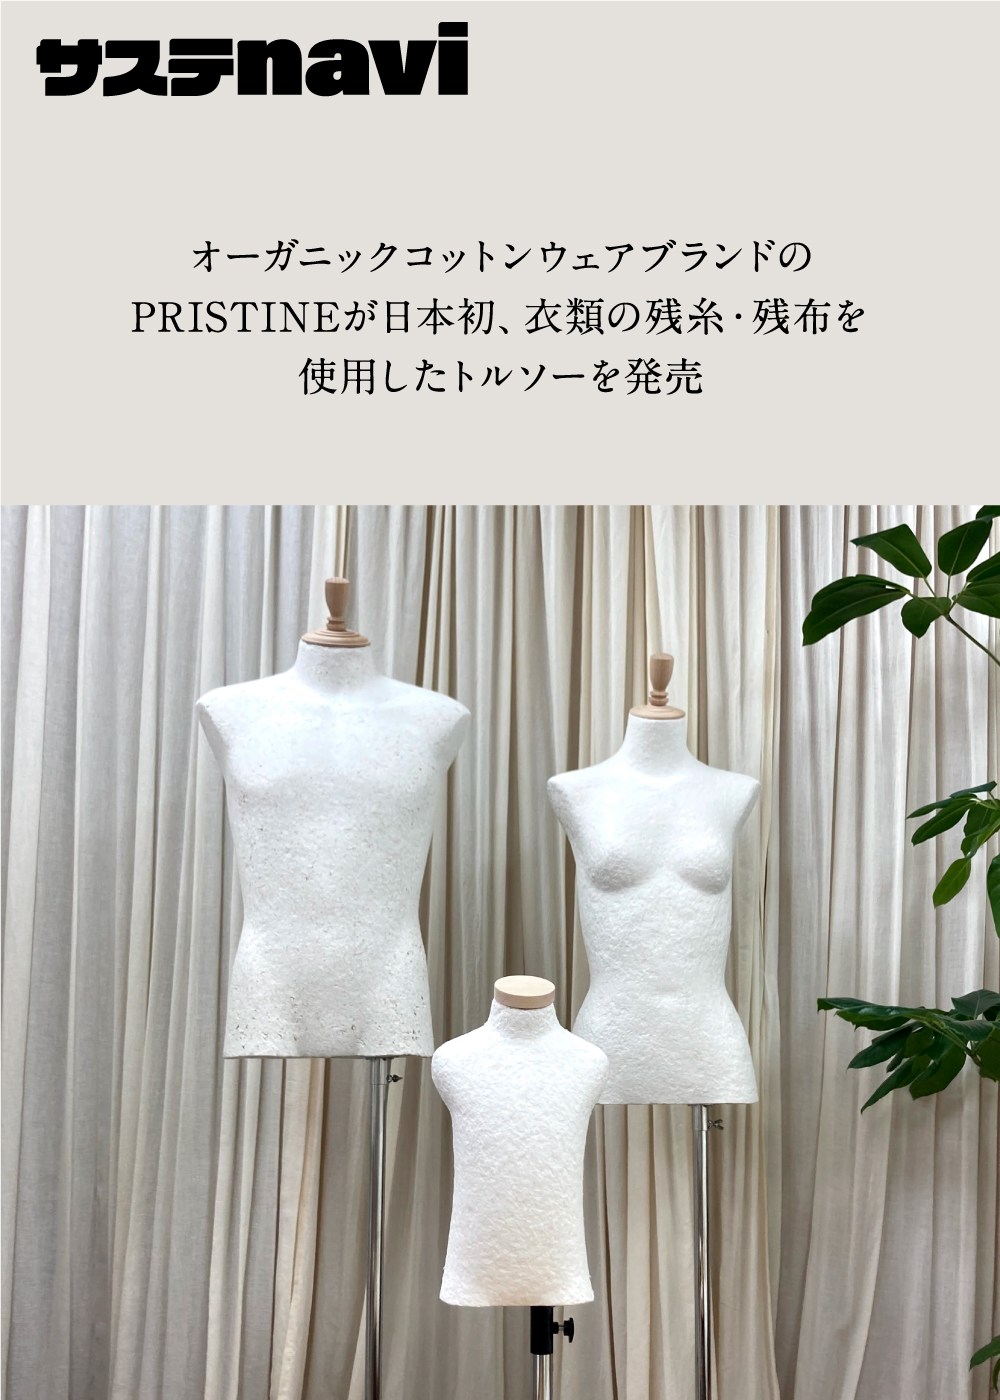 オーガニックコットンウェアブランドのPRISTINEが日本初、衣類の残糸・残布を使用したトルソーを発売